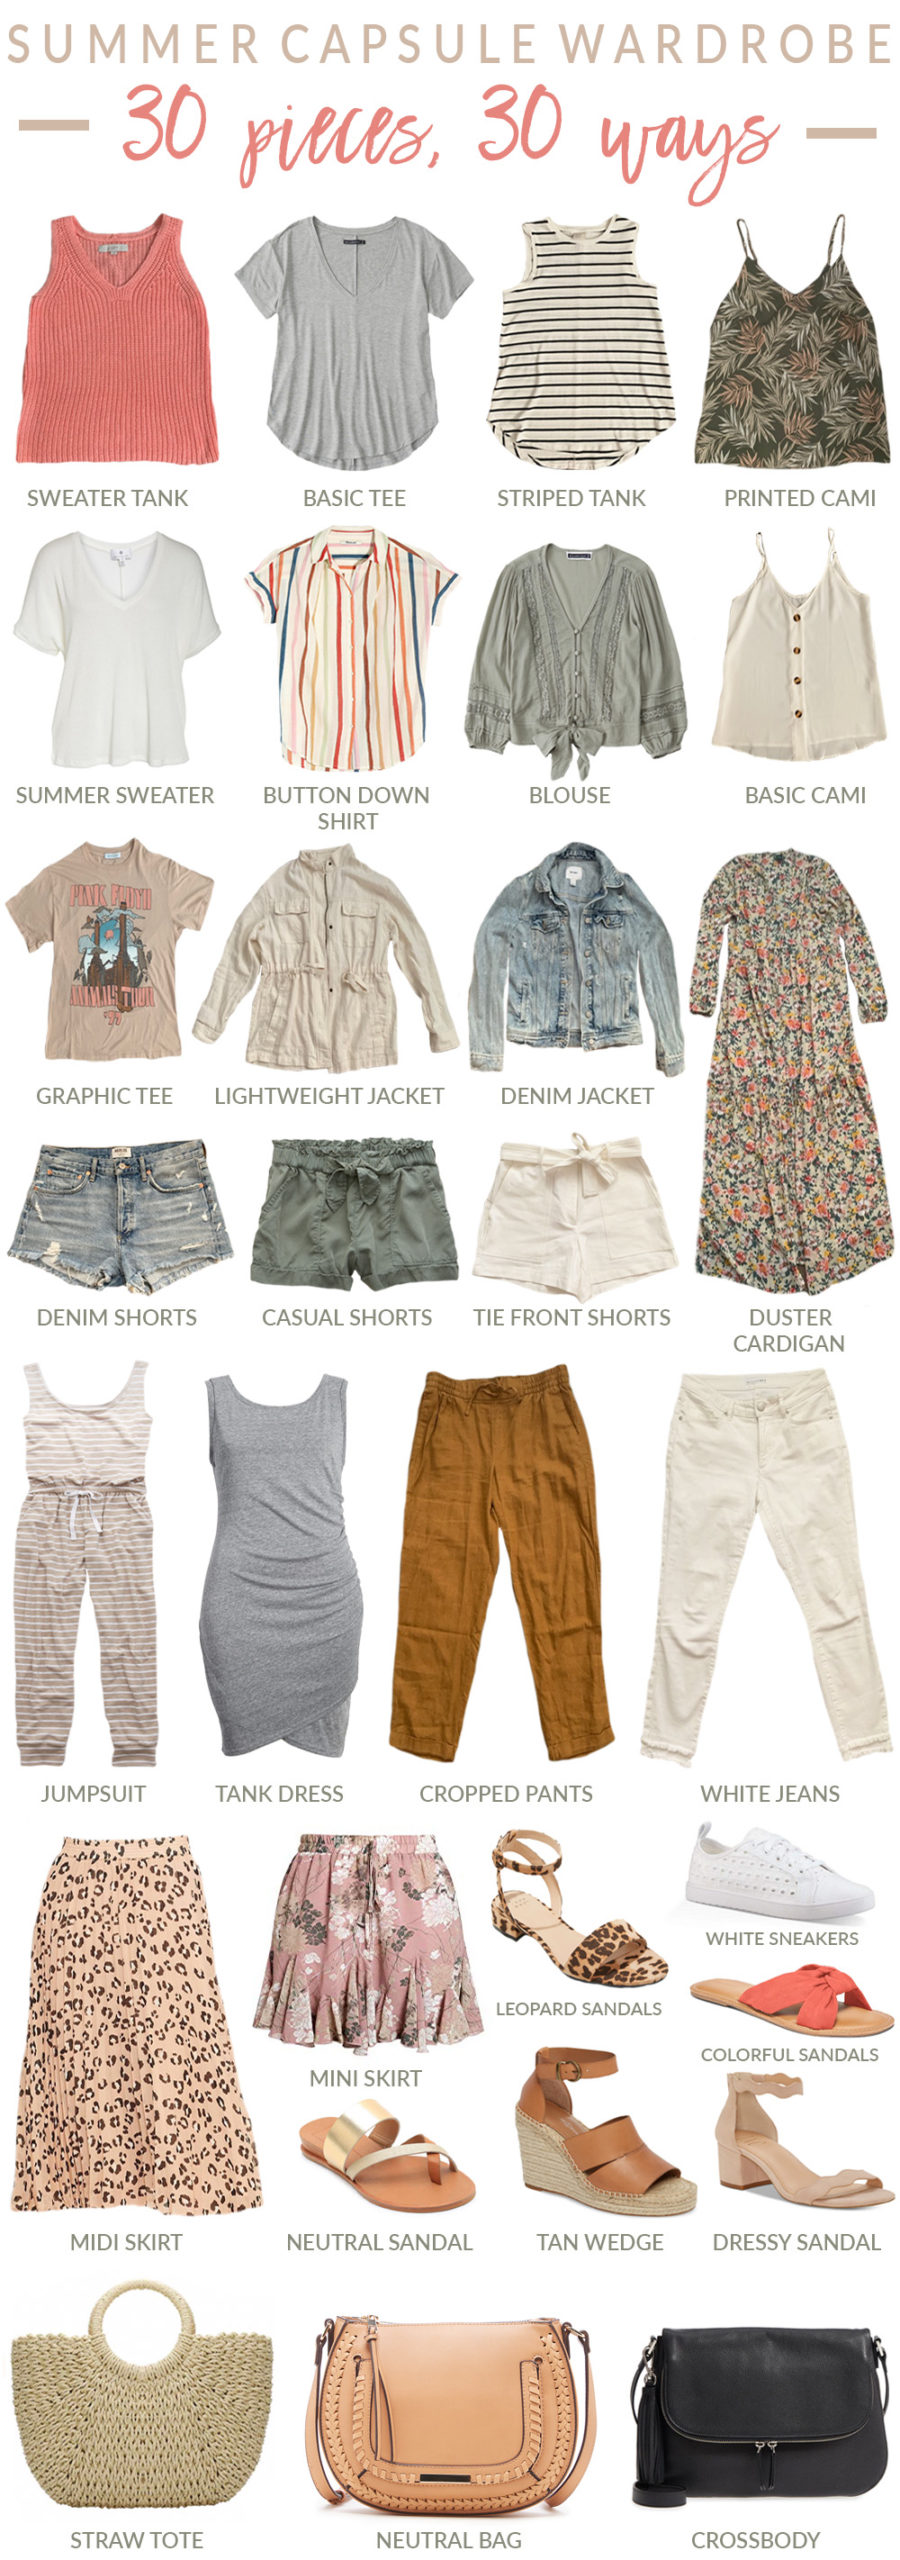 Summer Capsule Wardrobe: 30 pieces, 30 ways